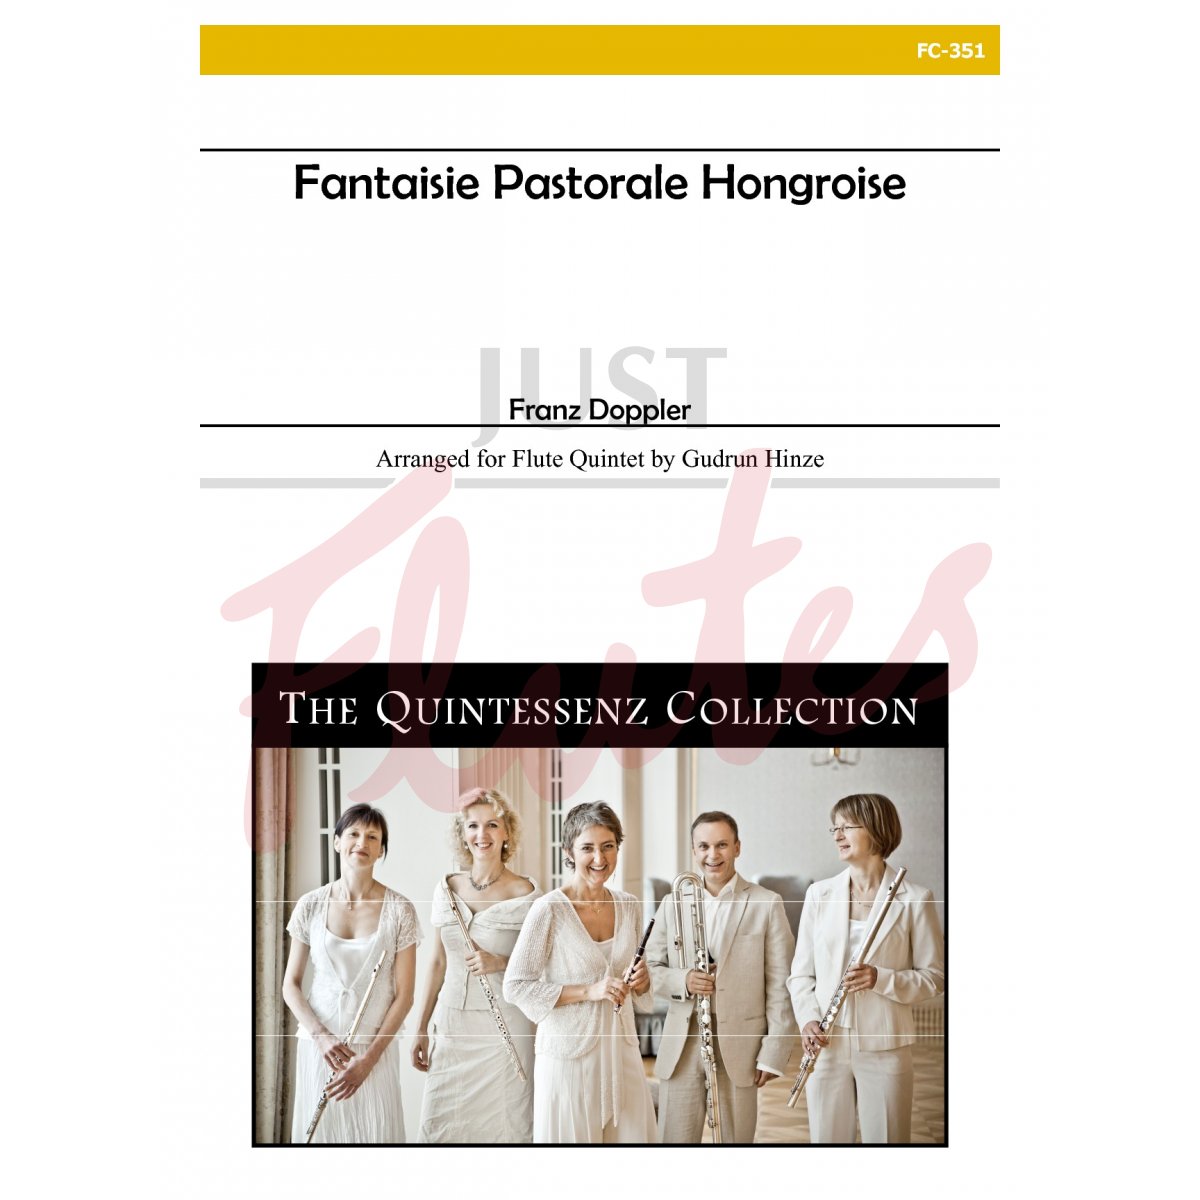 Fantaisie Pastorale Hongroise (Flute Quintet)